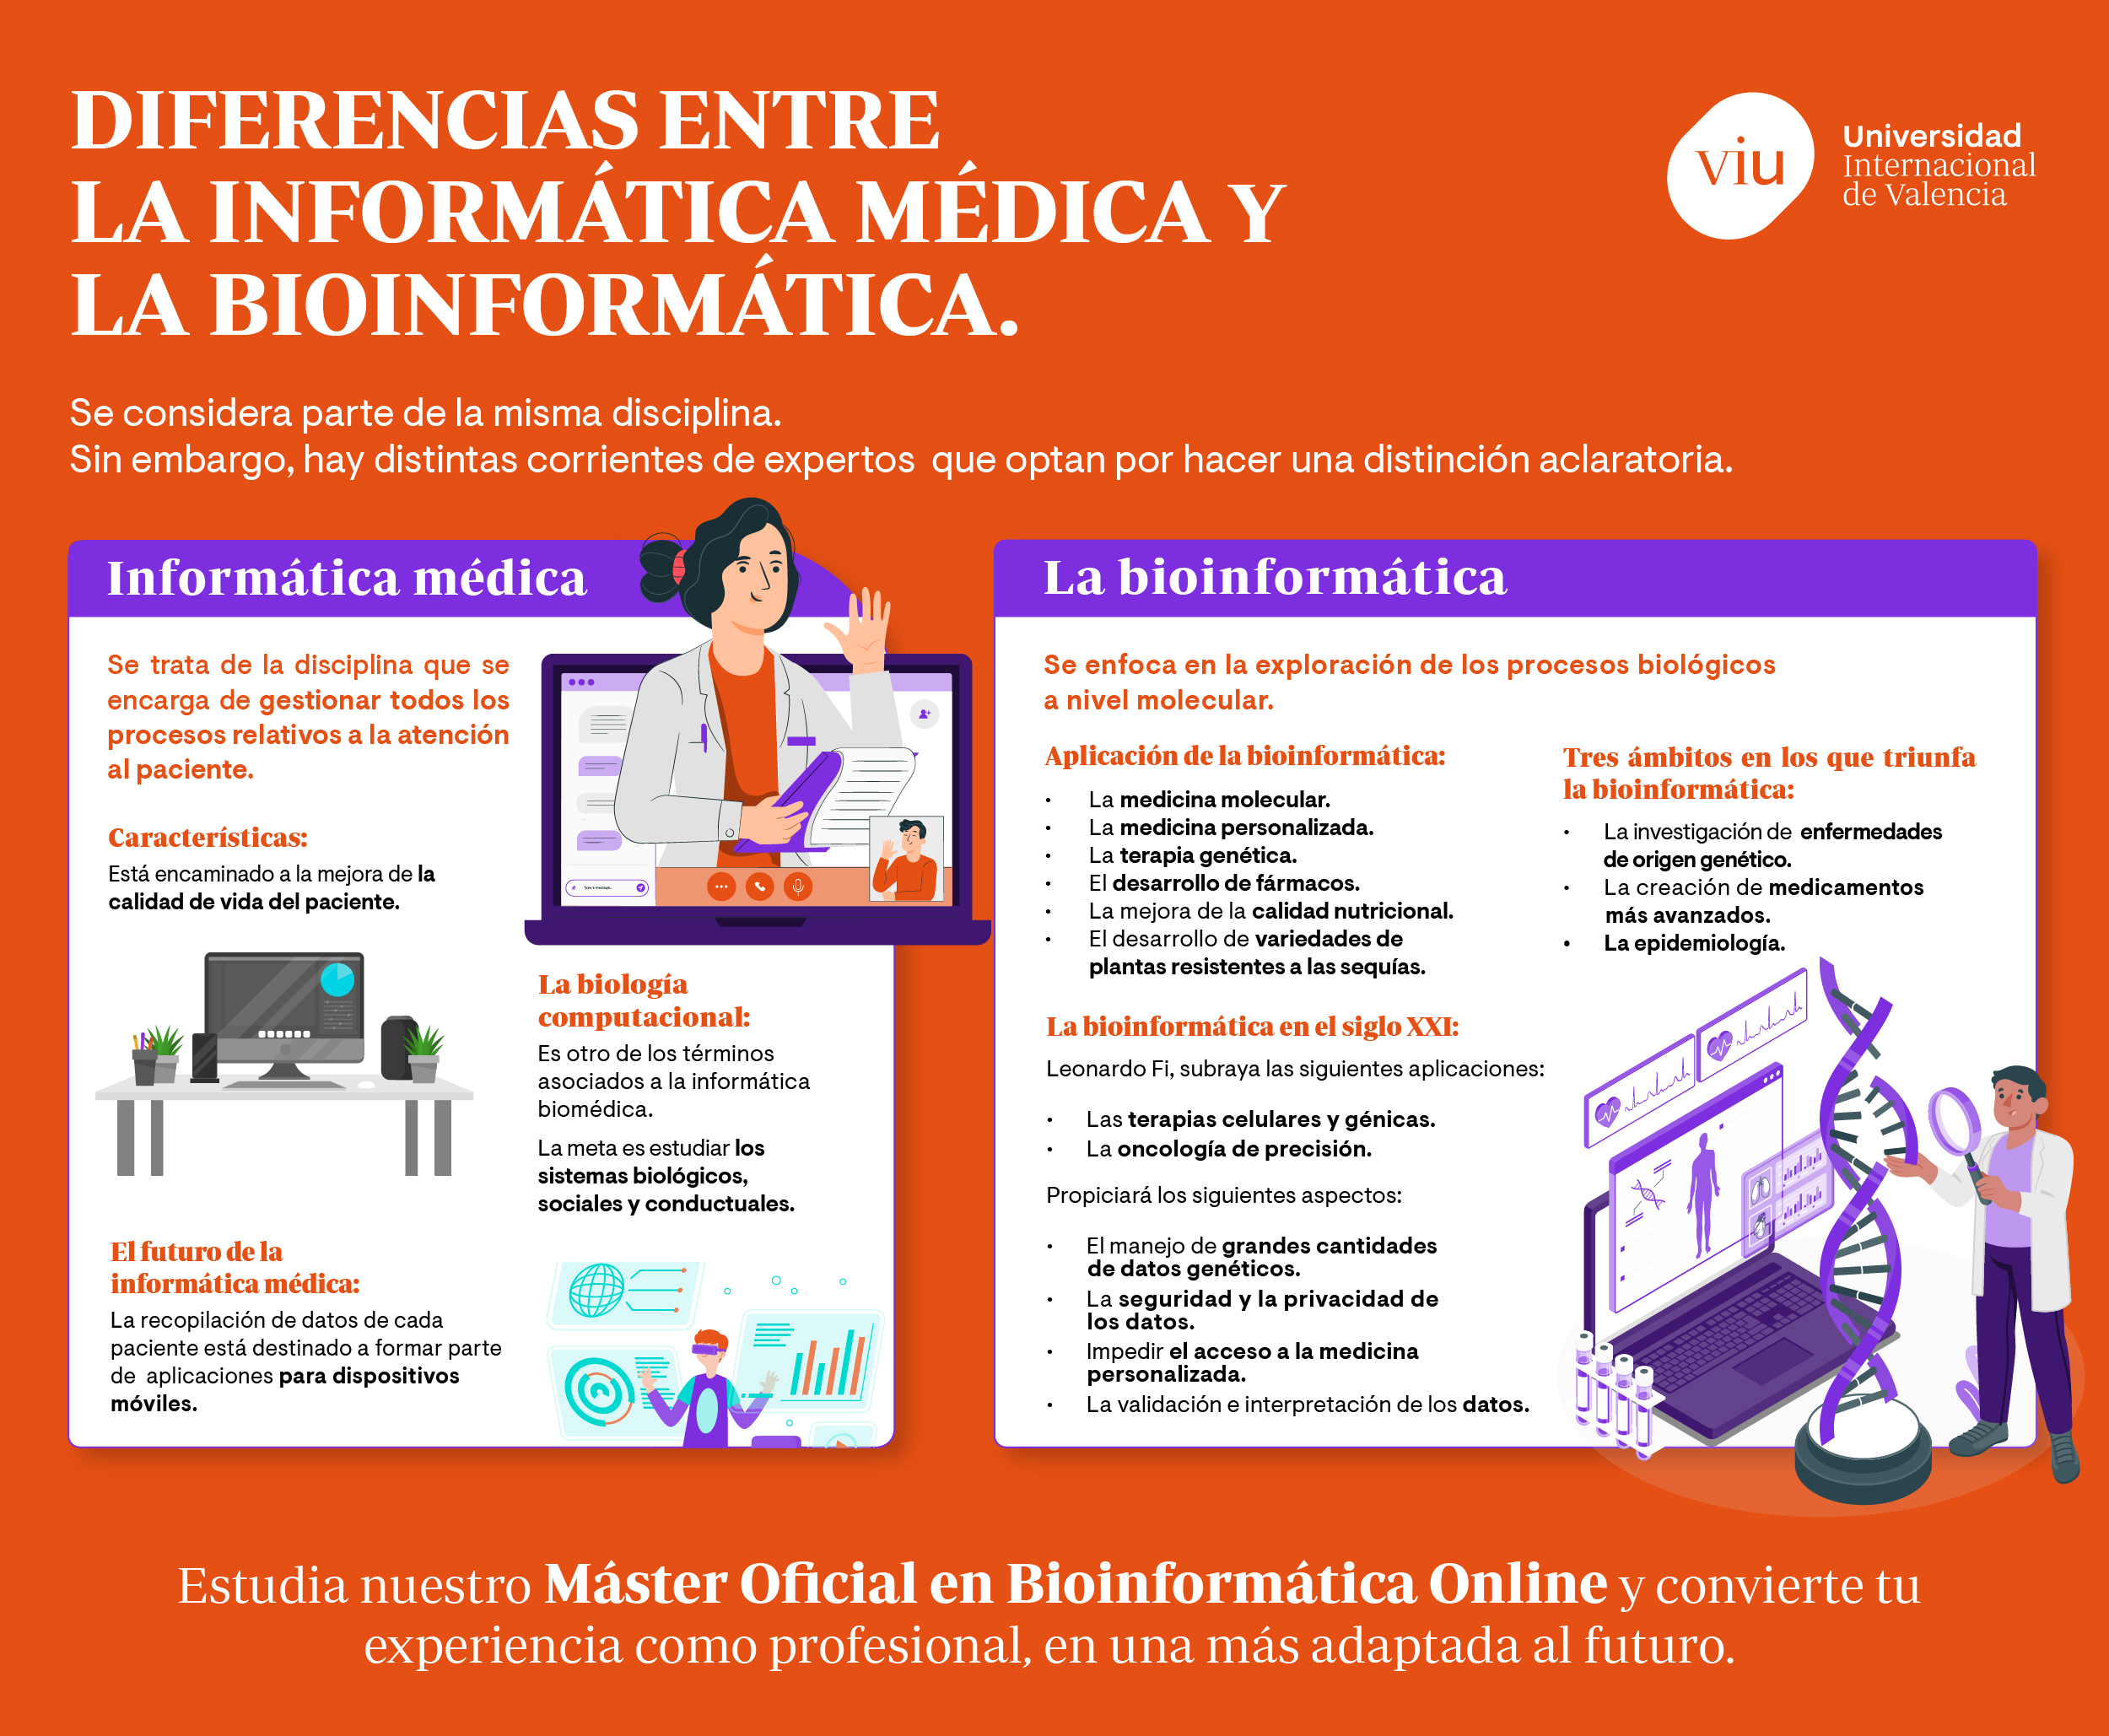 informatica-medica-y-la-bioinformatica-diferencias